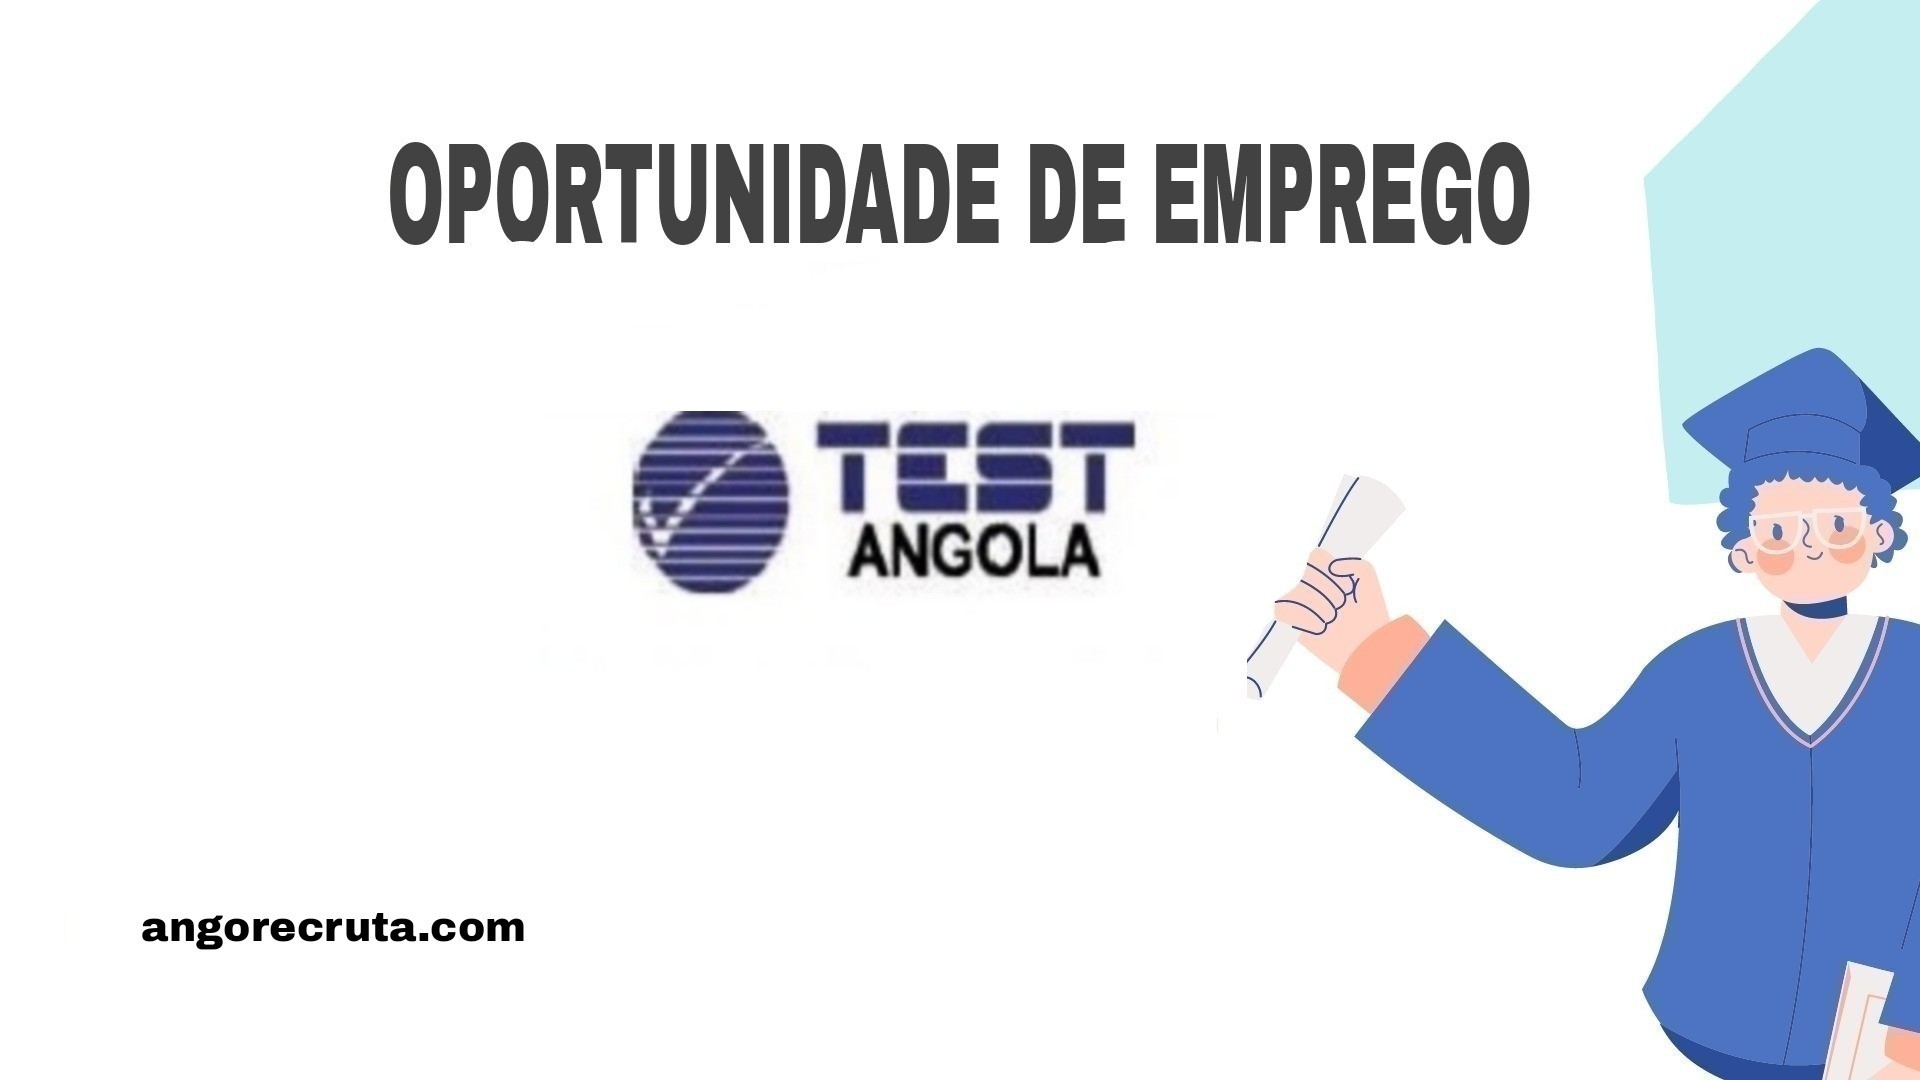 TEST Angola